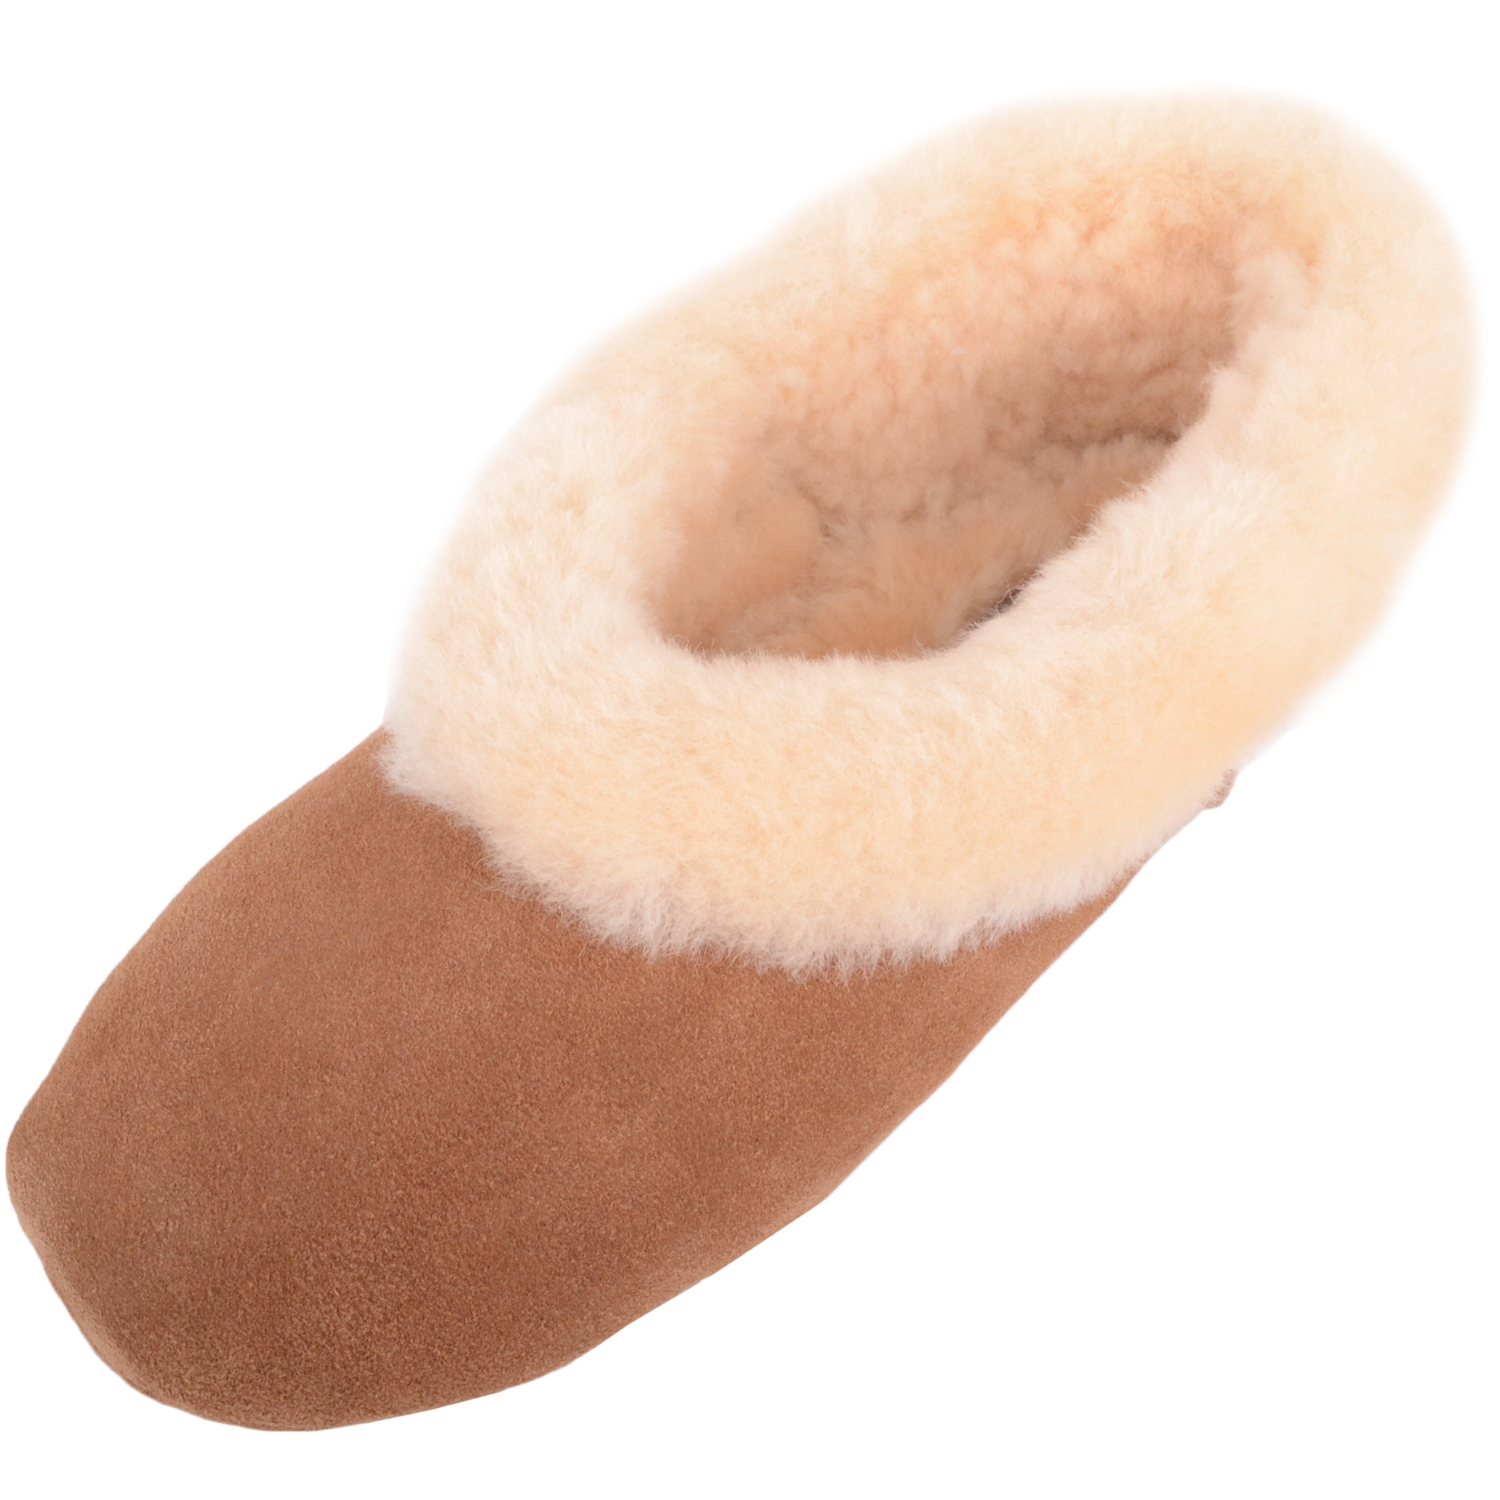 sheepskin ballet slippers